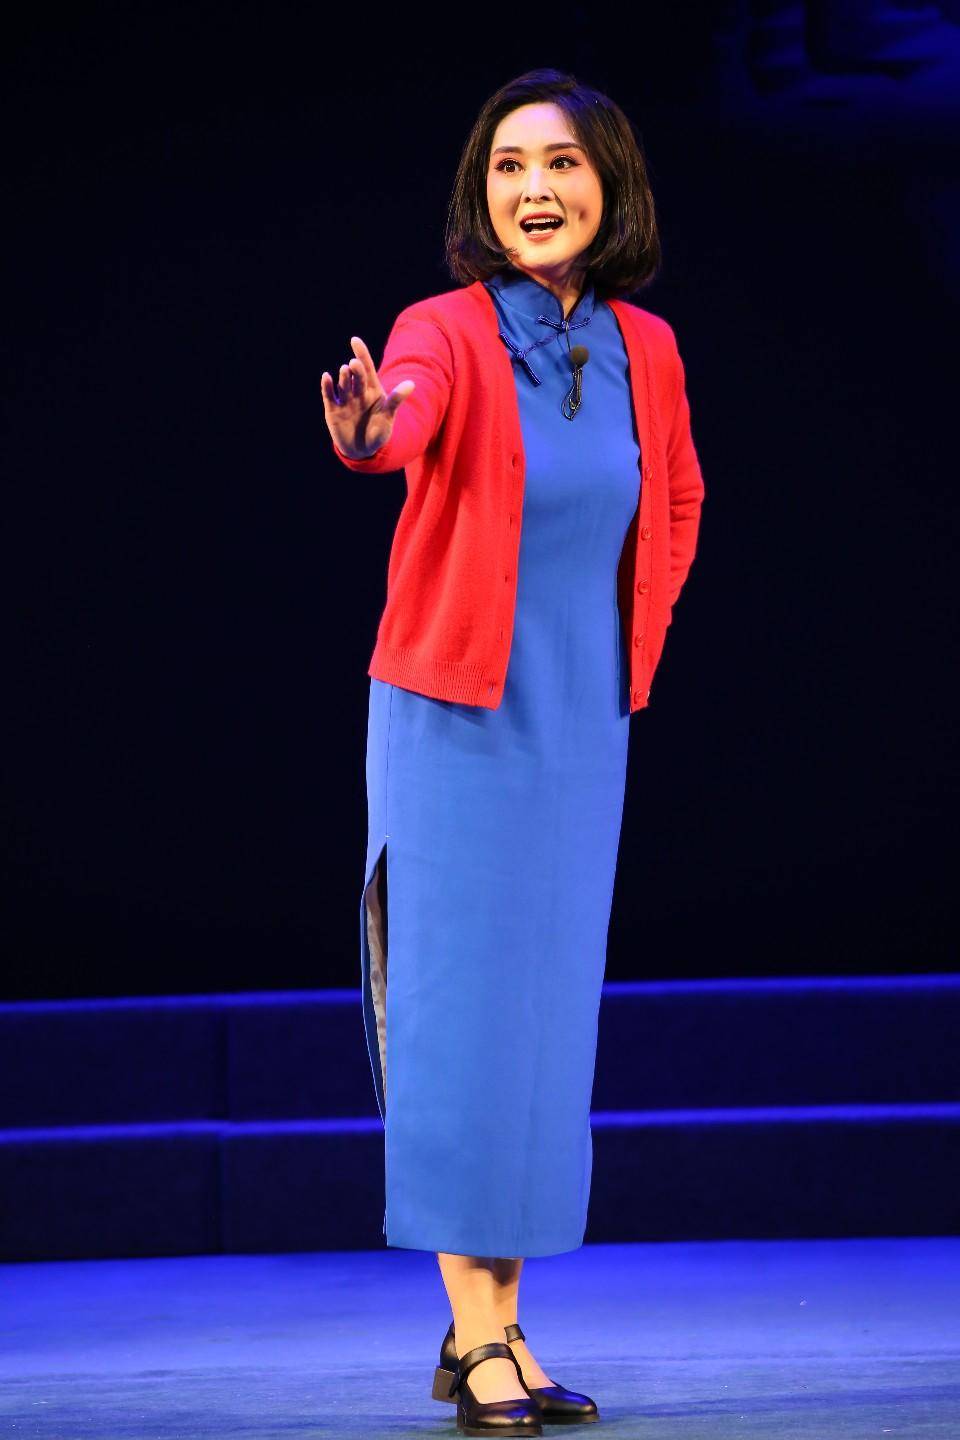 孟越成功塑造江姐这一经典舞台艺术形象,展现了她长年来对表演艺术